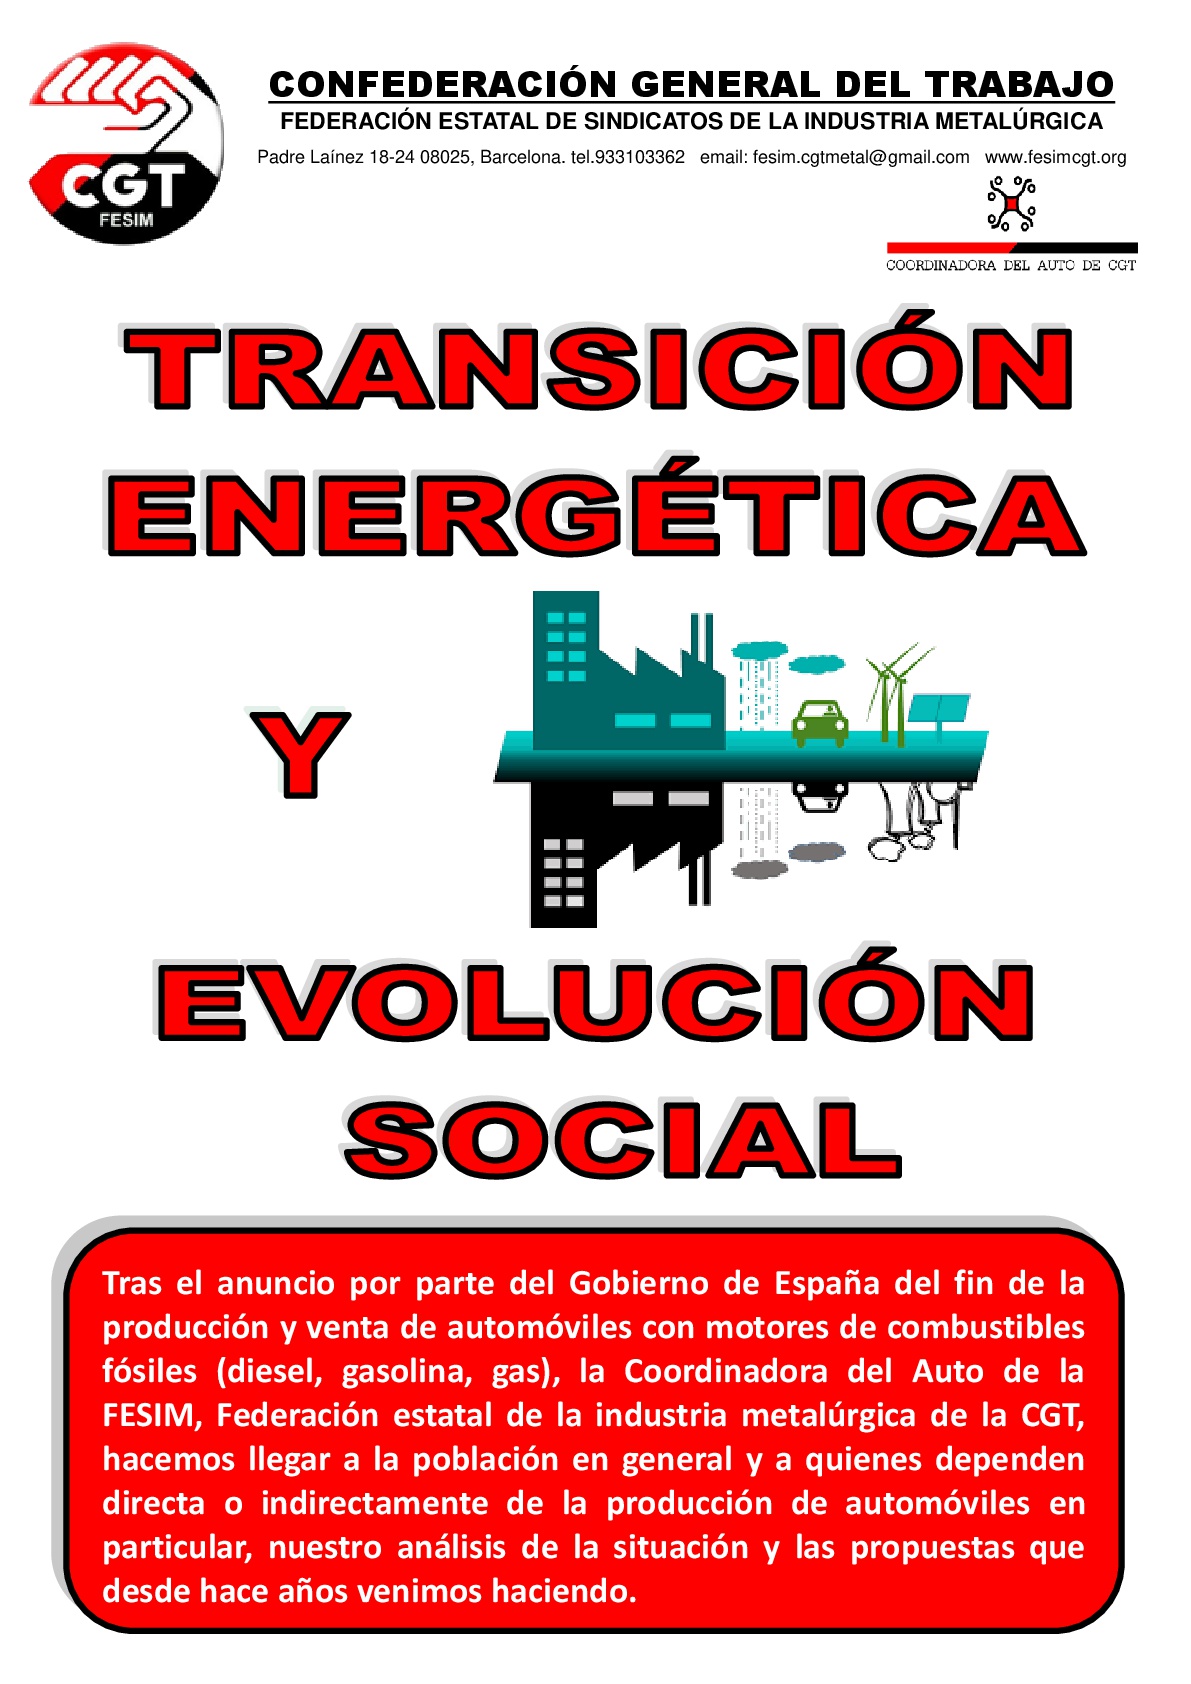 transicion-energetica-y-evolucion-social-_fesim_-001.jpg